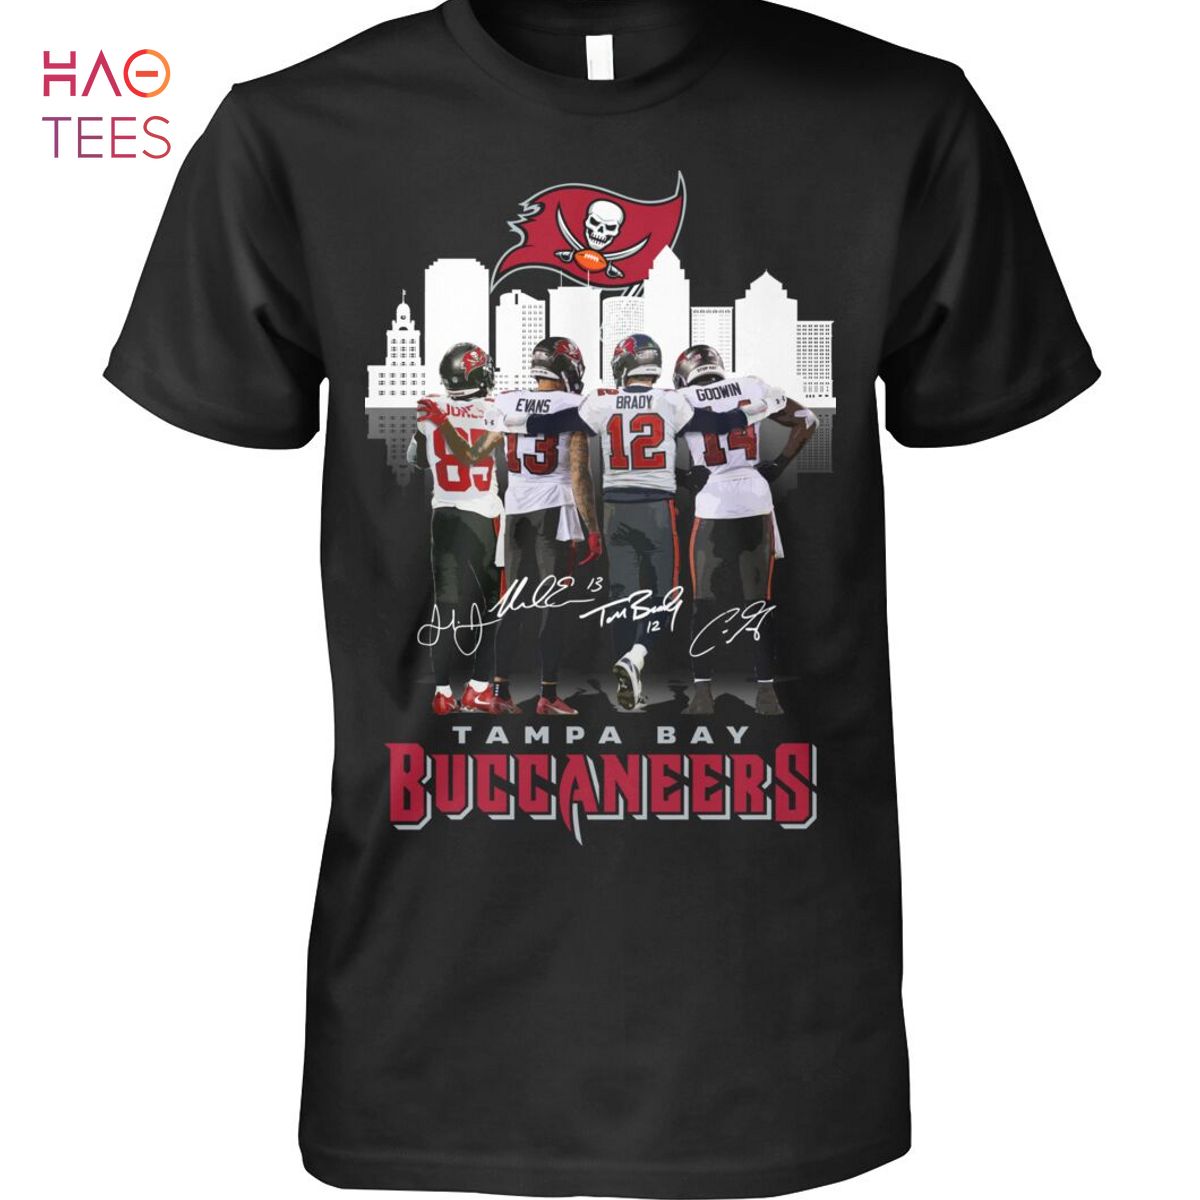 buccaneers t shirt